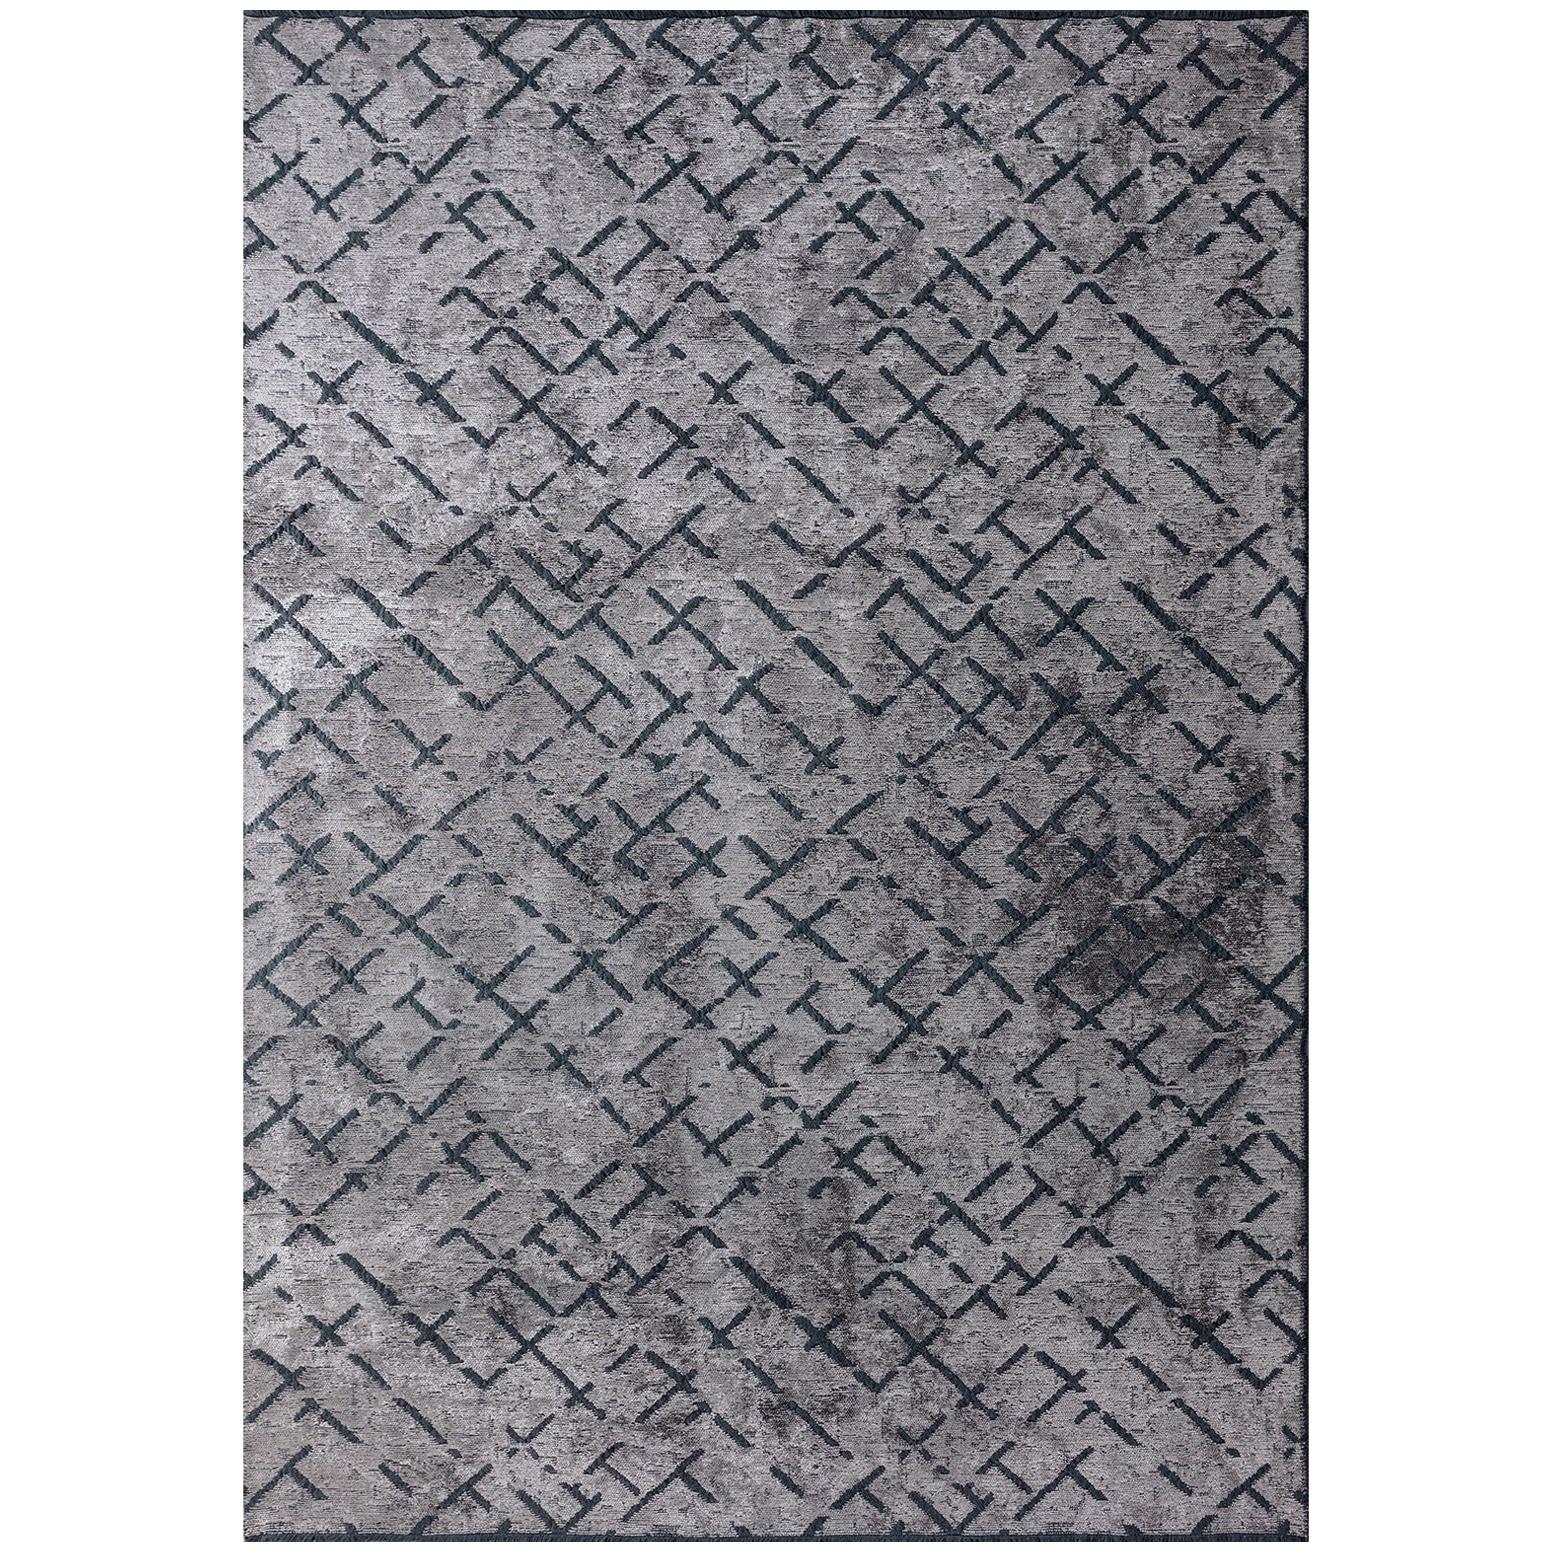 Tapis contemporain gris argenté à motif répétitif abstrait avec ou sans franges